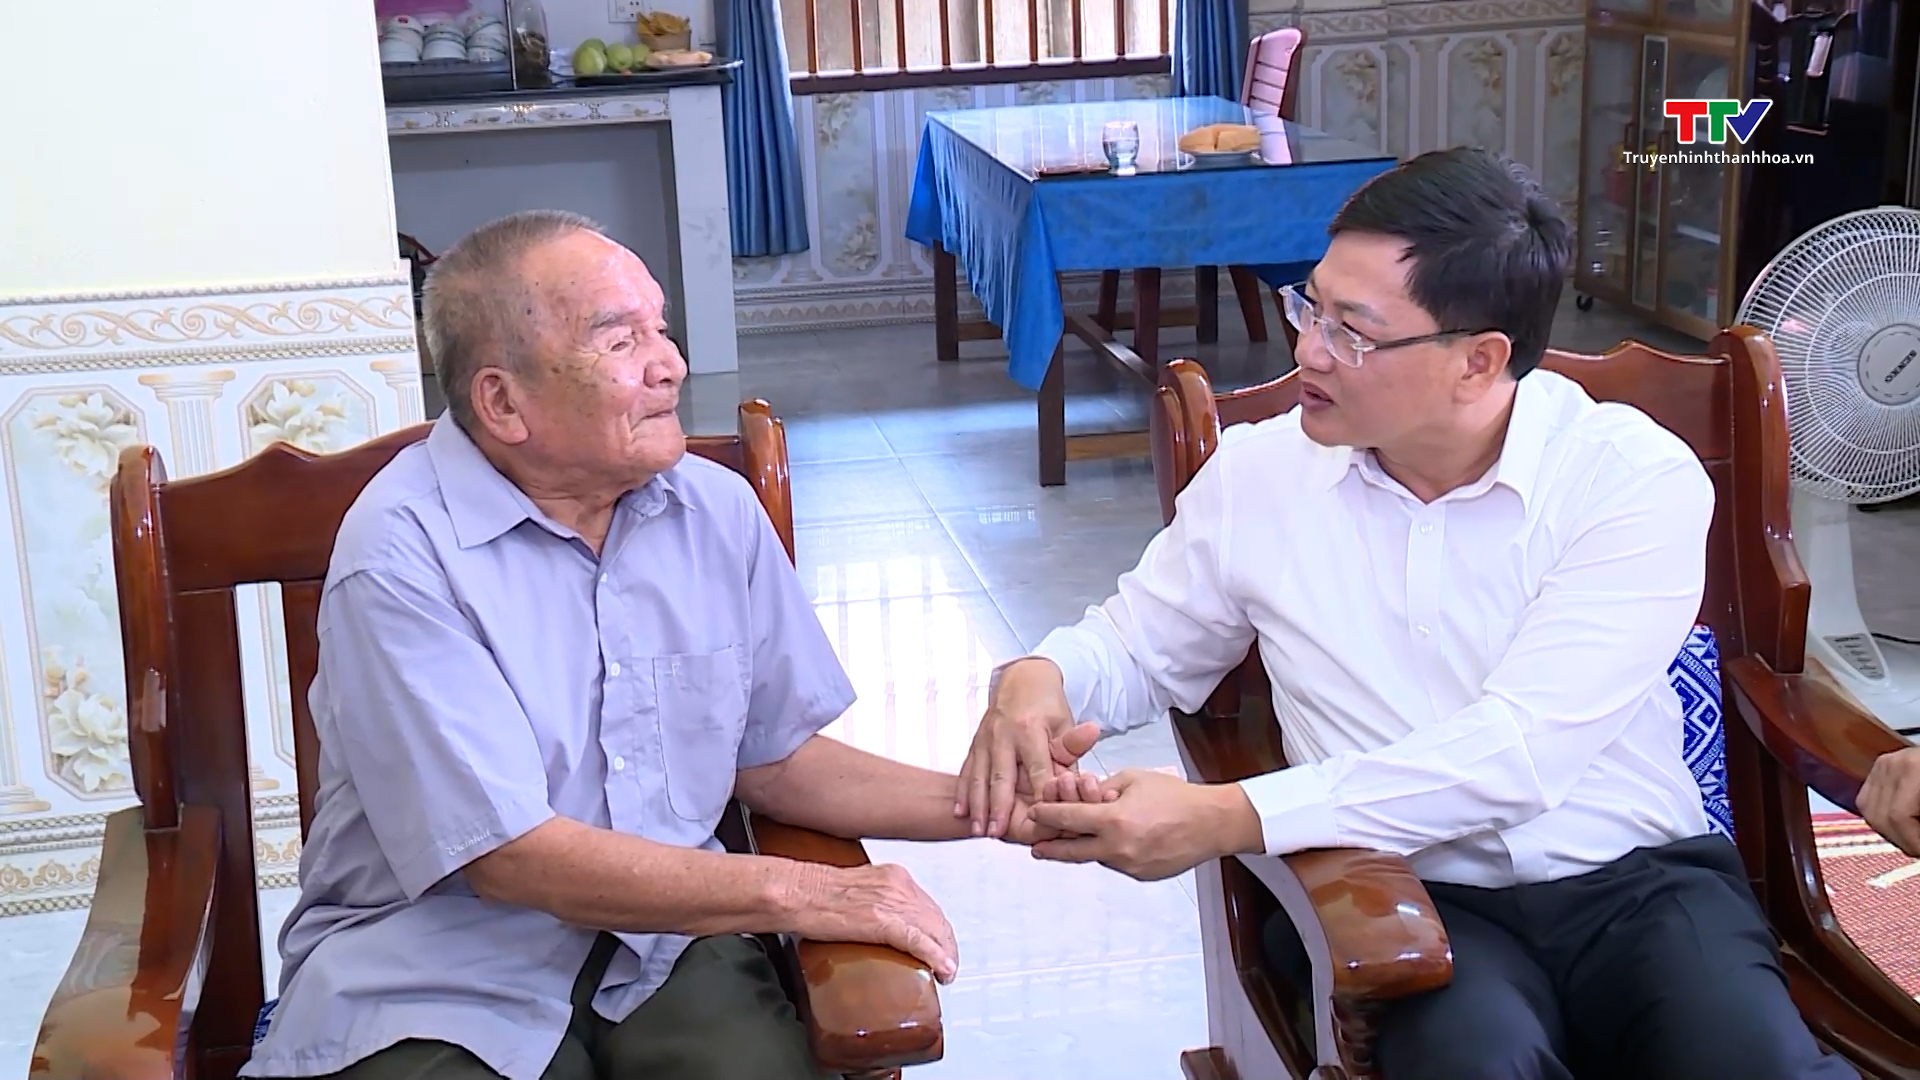 Phó Chủ tịch UBND tỉnh Mai Xuân Liêm thăm, tặng qùa các gia đình chính sách- Ảnh 4.